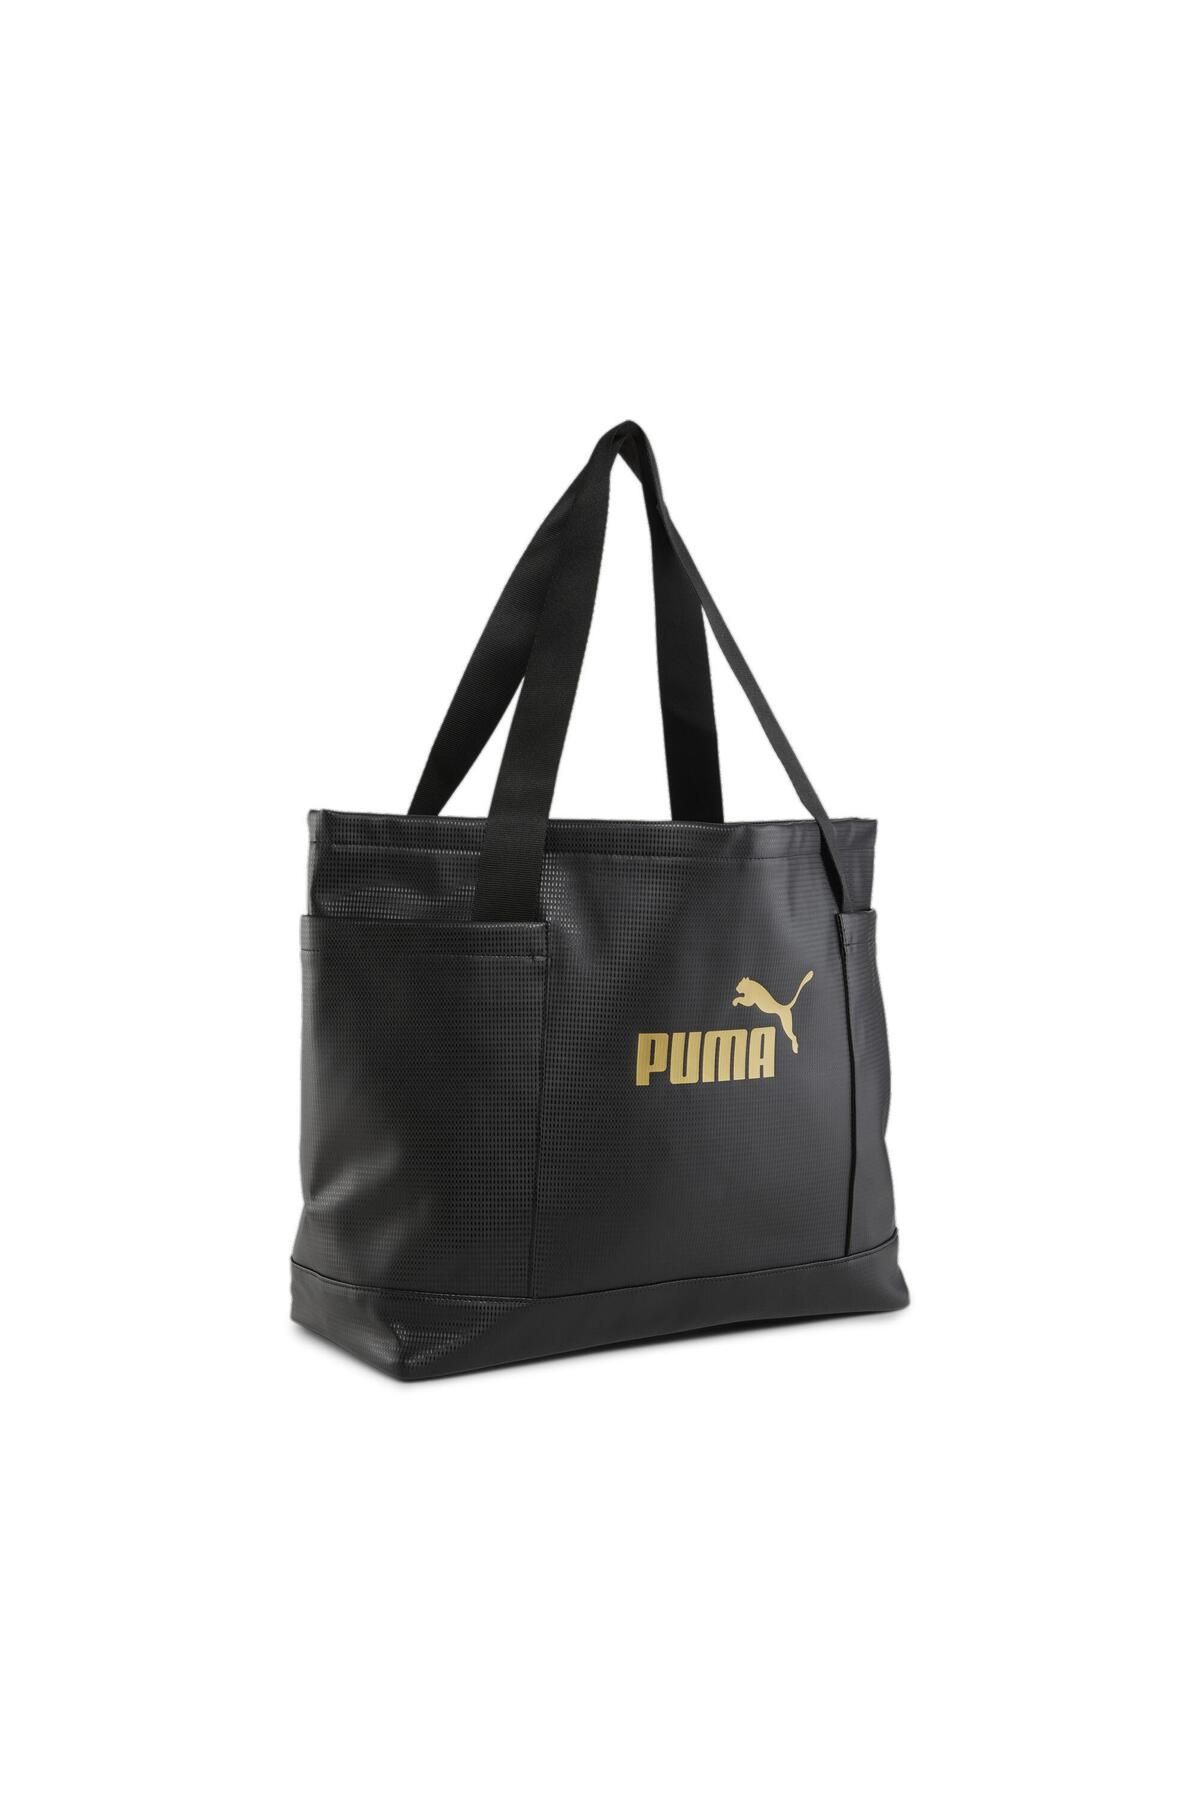 Puma Core Up Large Shopper Kadın Omuz Çantası